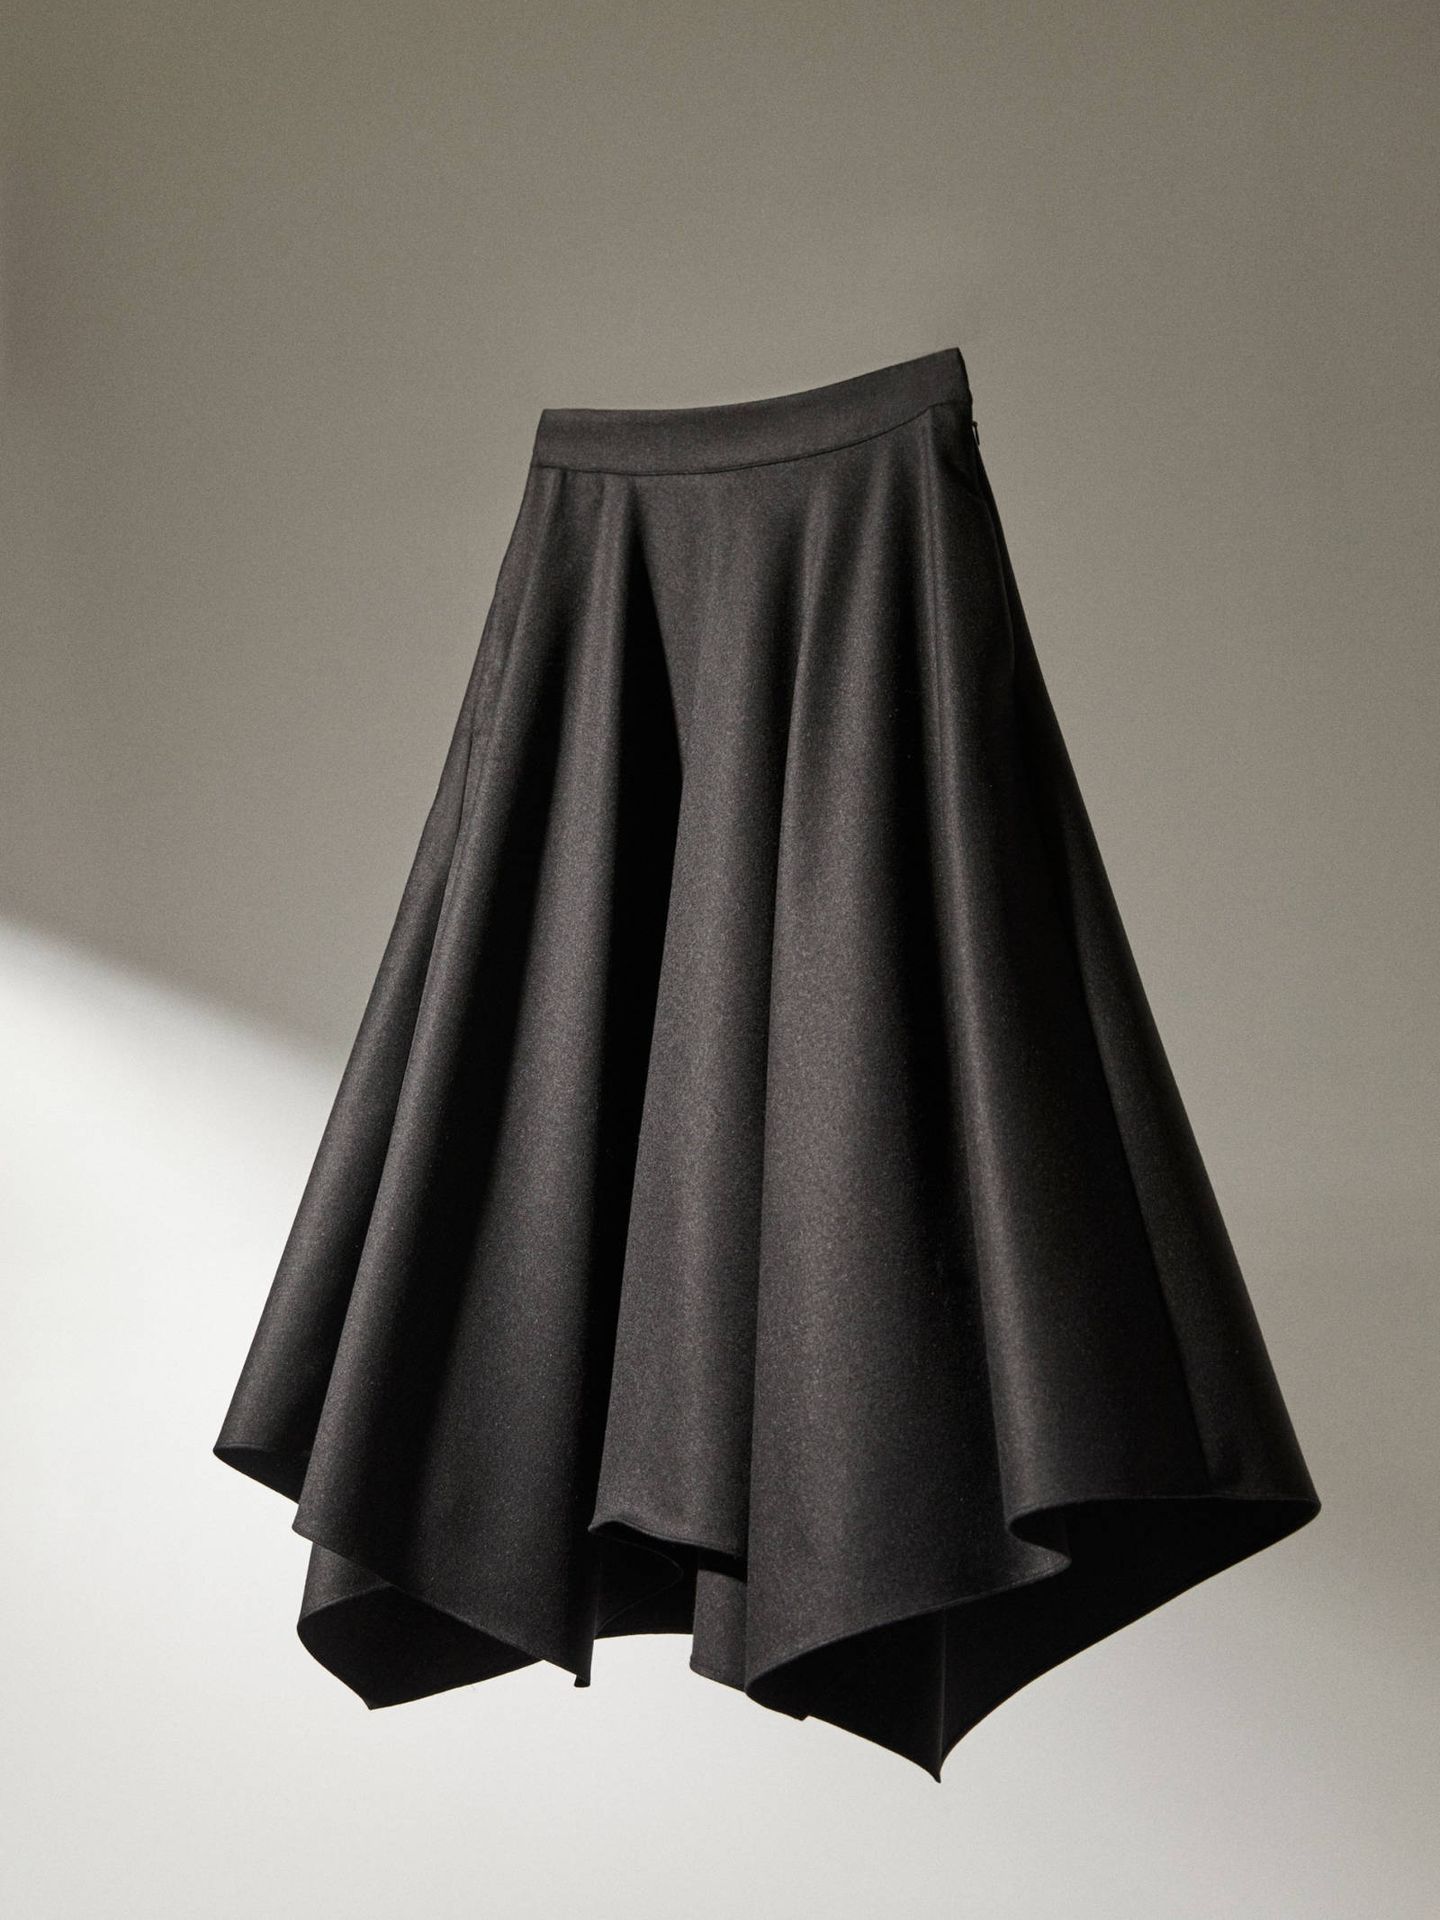 Encontramos el jersey perfecto para esta falda de Massimo Dutti. (Cortesía)